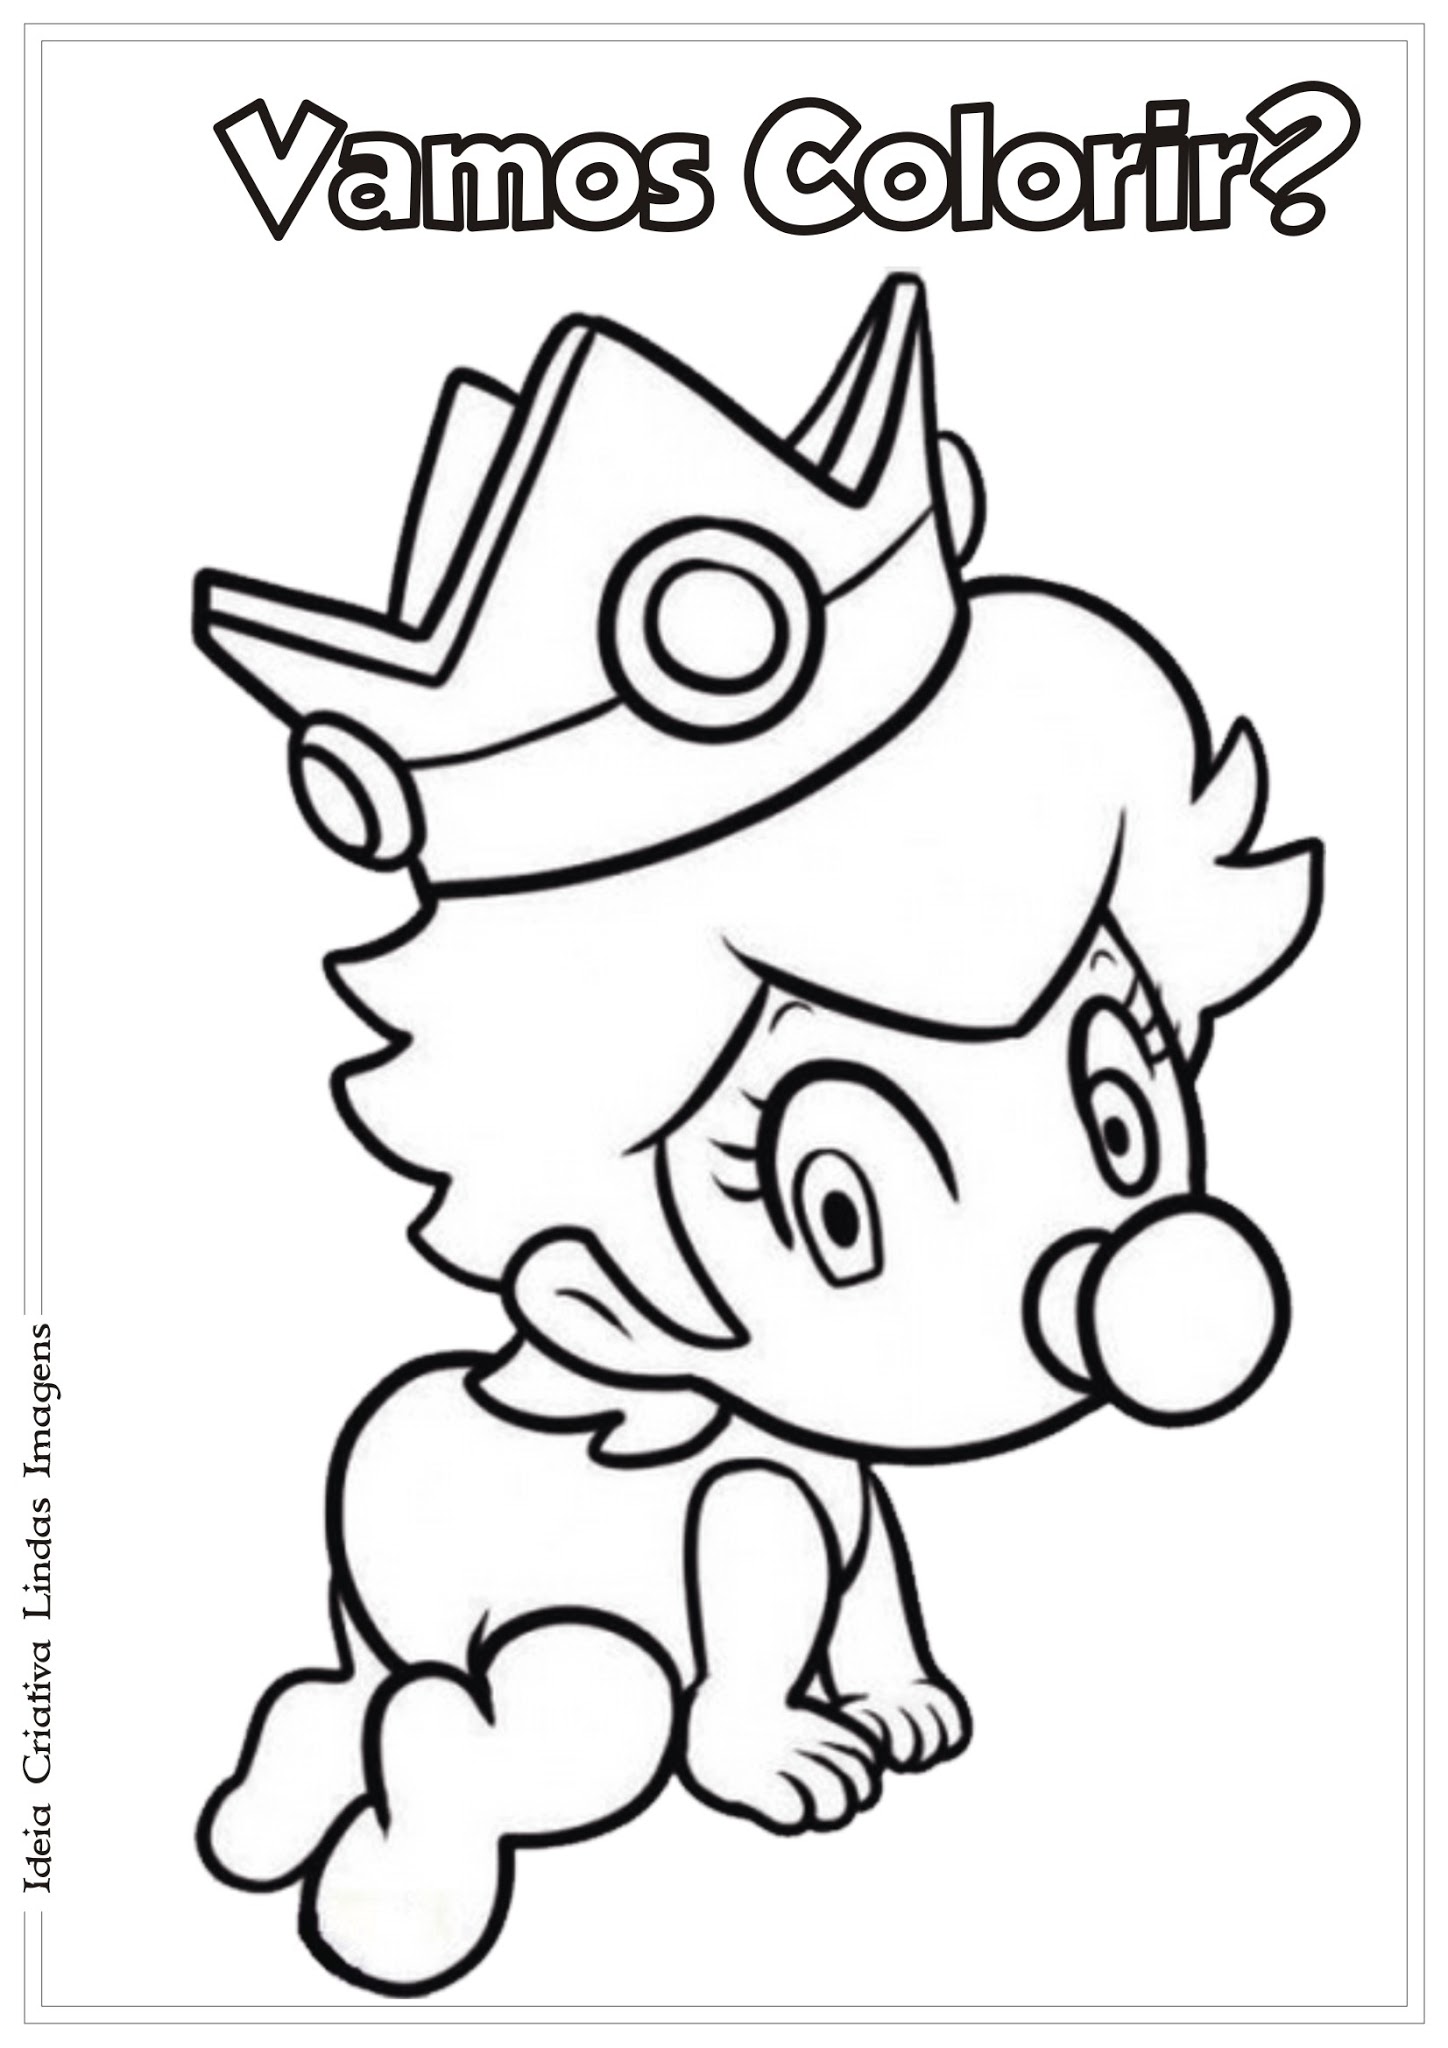 Desenho de princesa linda com coelhinho fofo para colorir para imprimir